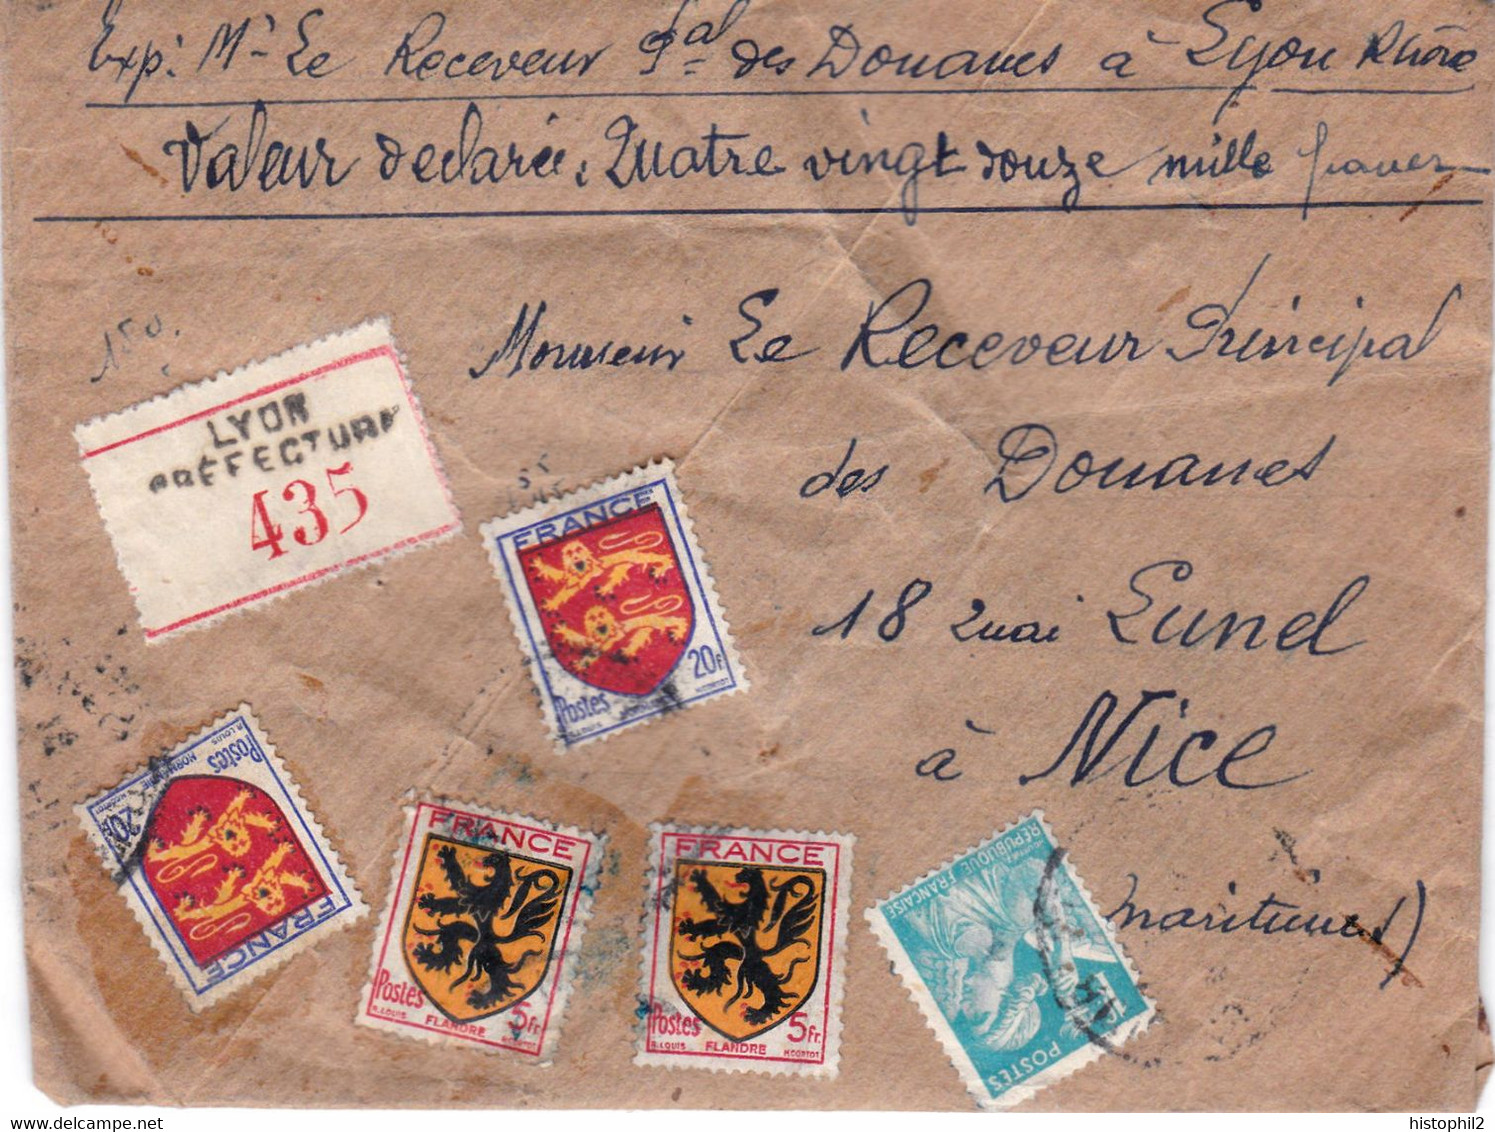 Valeur Déclarée 92000 F Lettre 1944 Affranchie 51 F Receveur Principal Douanes Lyon Pr Son Homologue à Nice Cachets Cire - Postal Rates